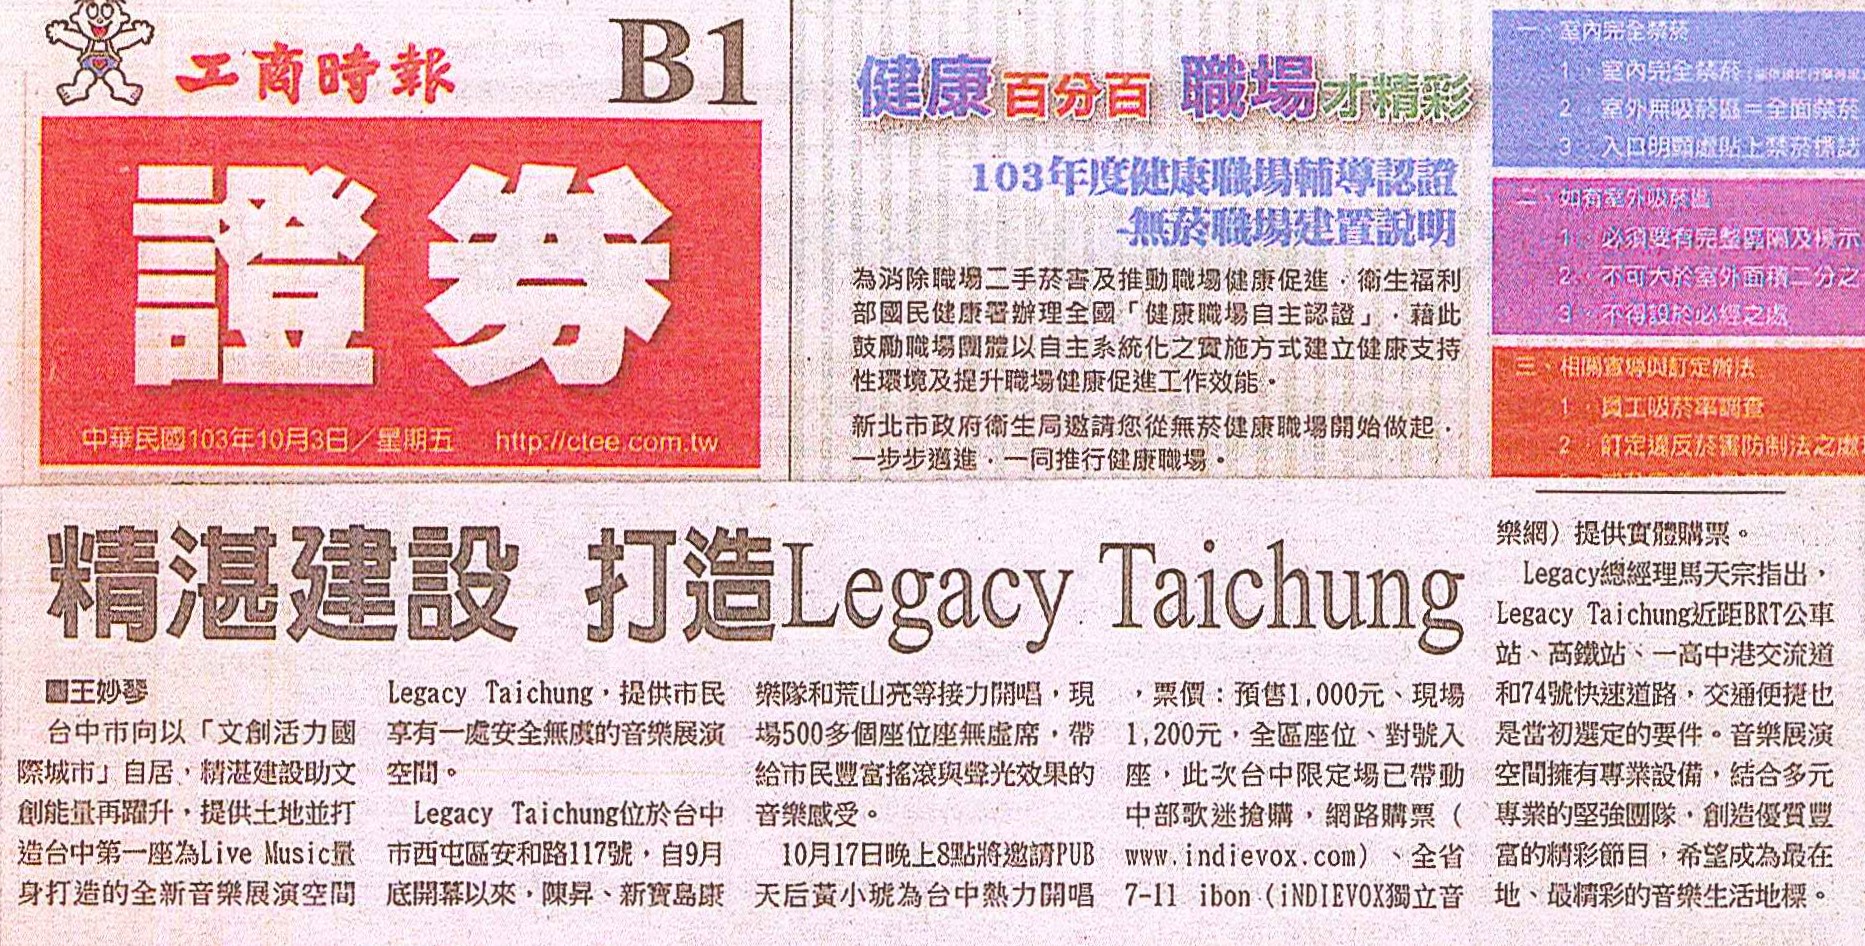 20141003 工商時報 (2)_精湛建設 打造Legacy Taichung